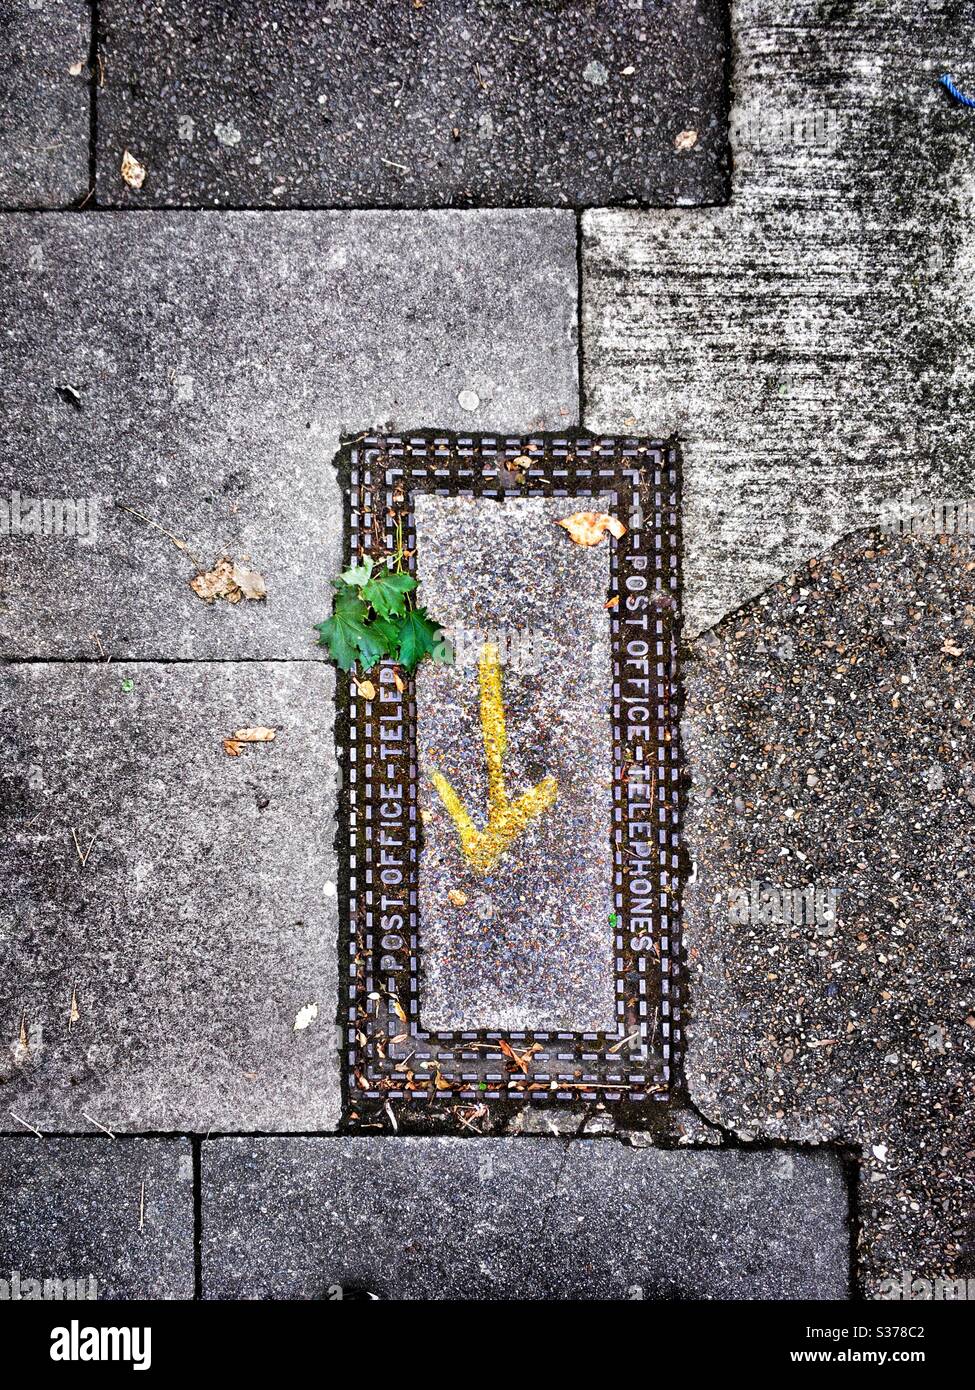 Une flèche jaune sur un trottoir de ville dans un cadre ornemental pointe mystérieusement vers quelque chose d'invisible. Une feuille verte se brise dans l'image. Un motif frappant de pavés entoure le châssis. Banque D'Images